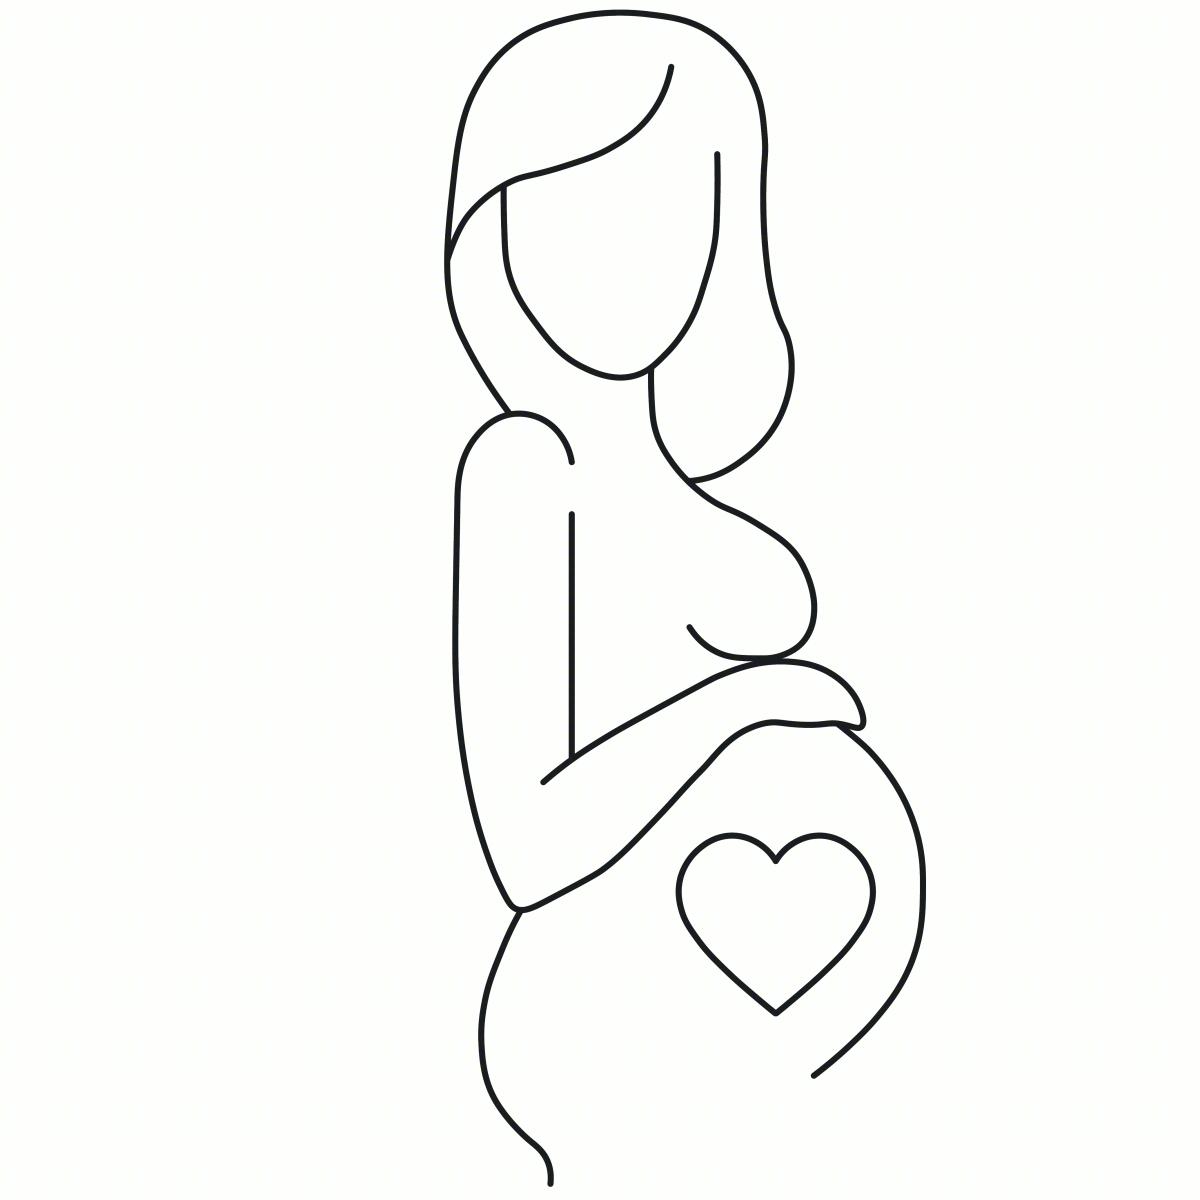 怀孕 怀孕的女人 孕 - Pixabay上的免费照片 - Pixabay